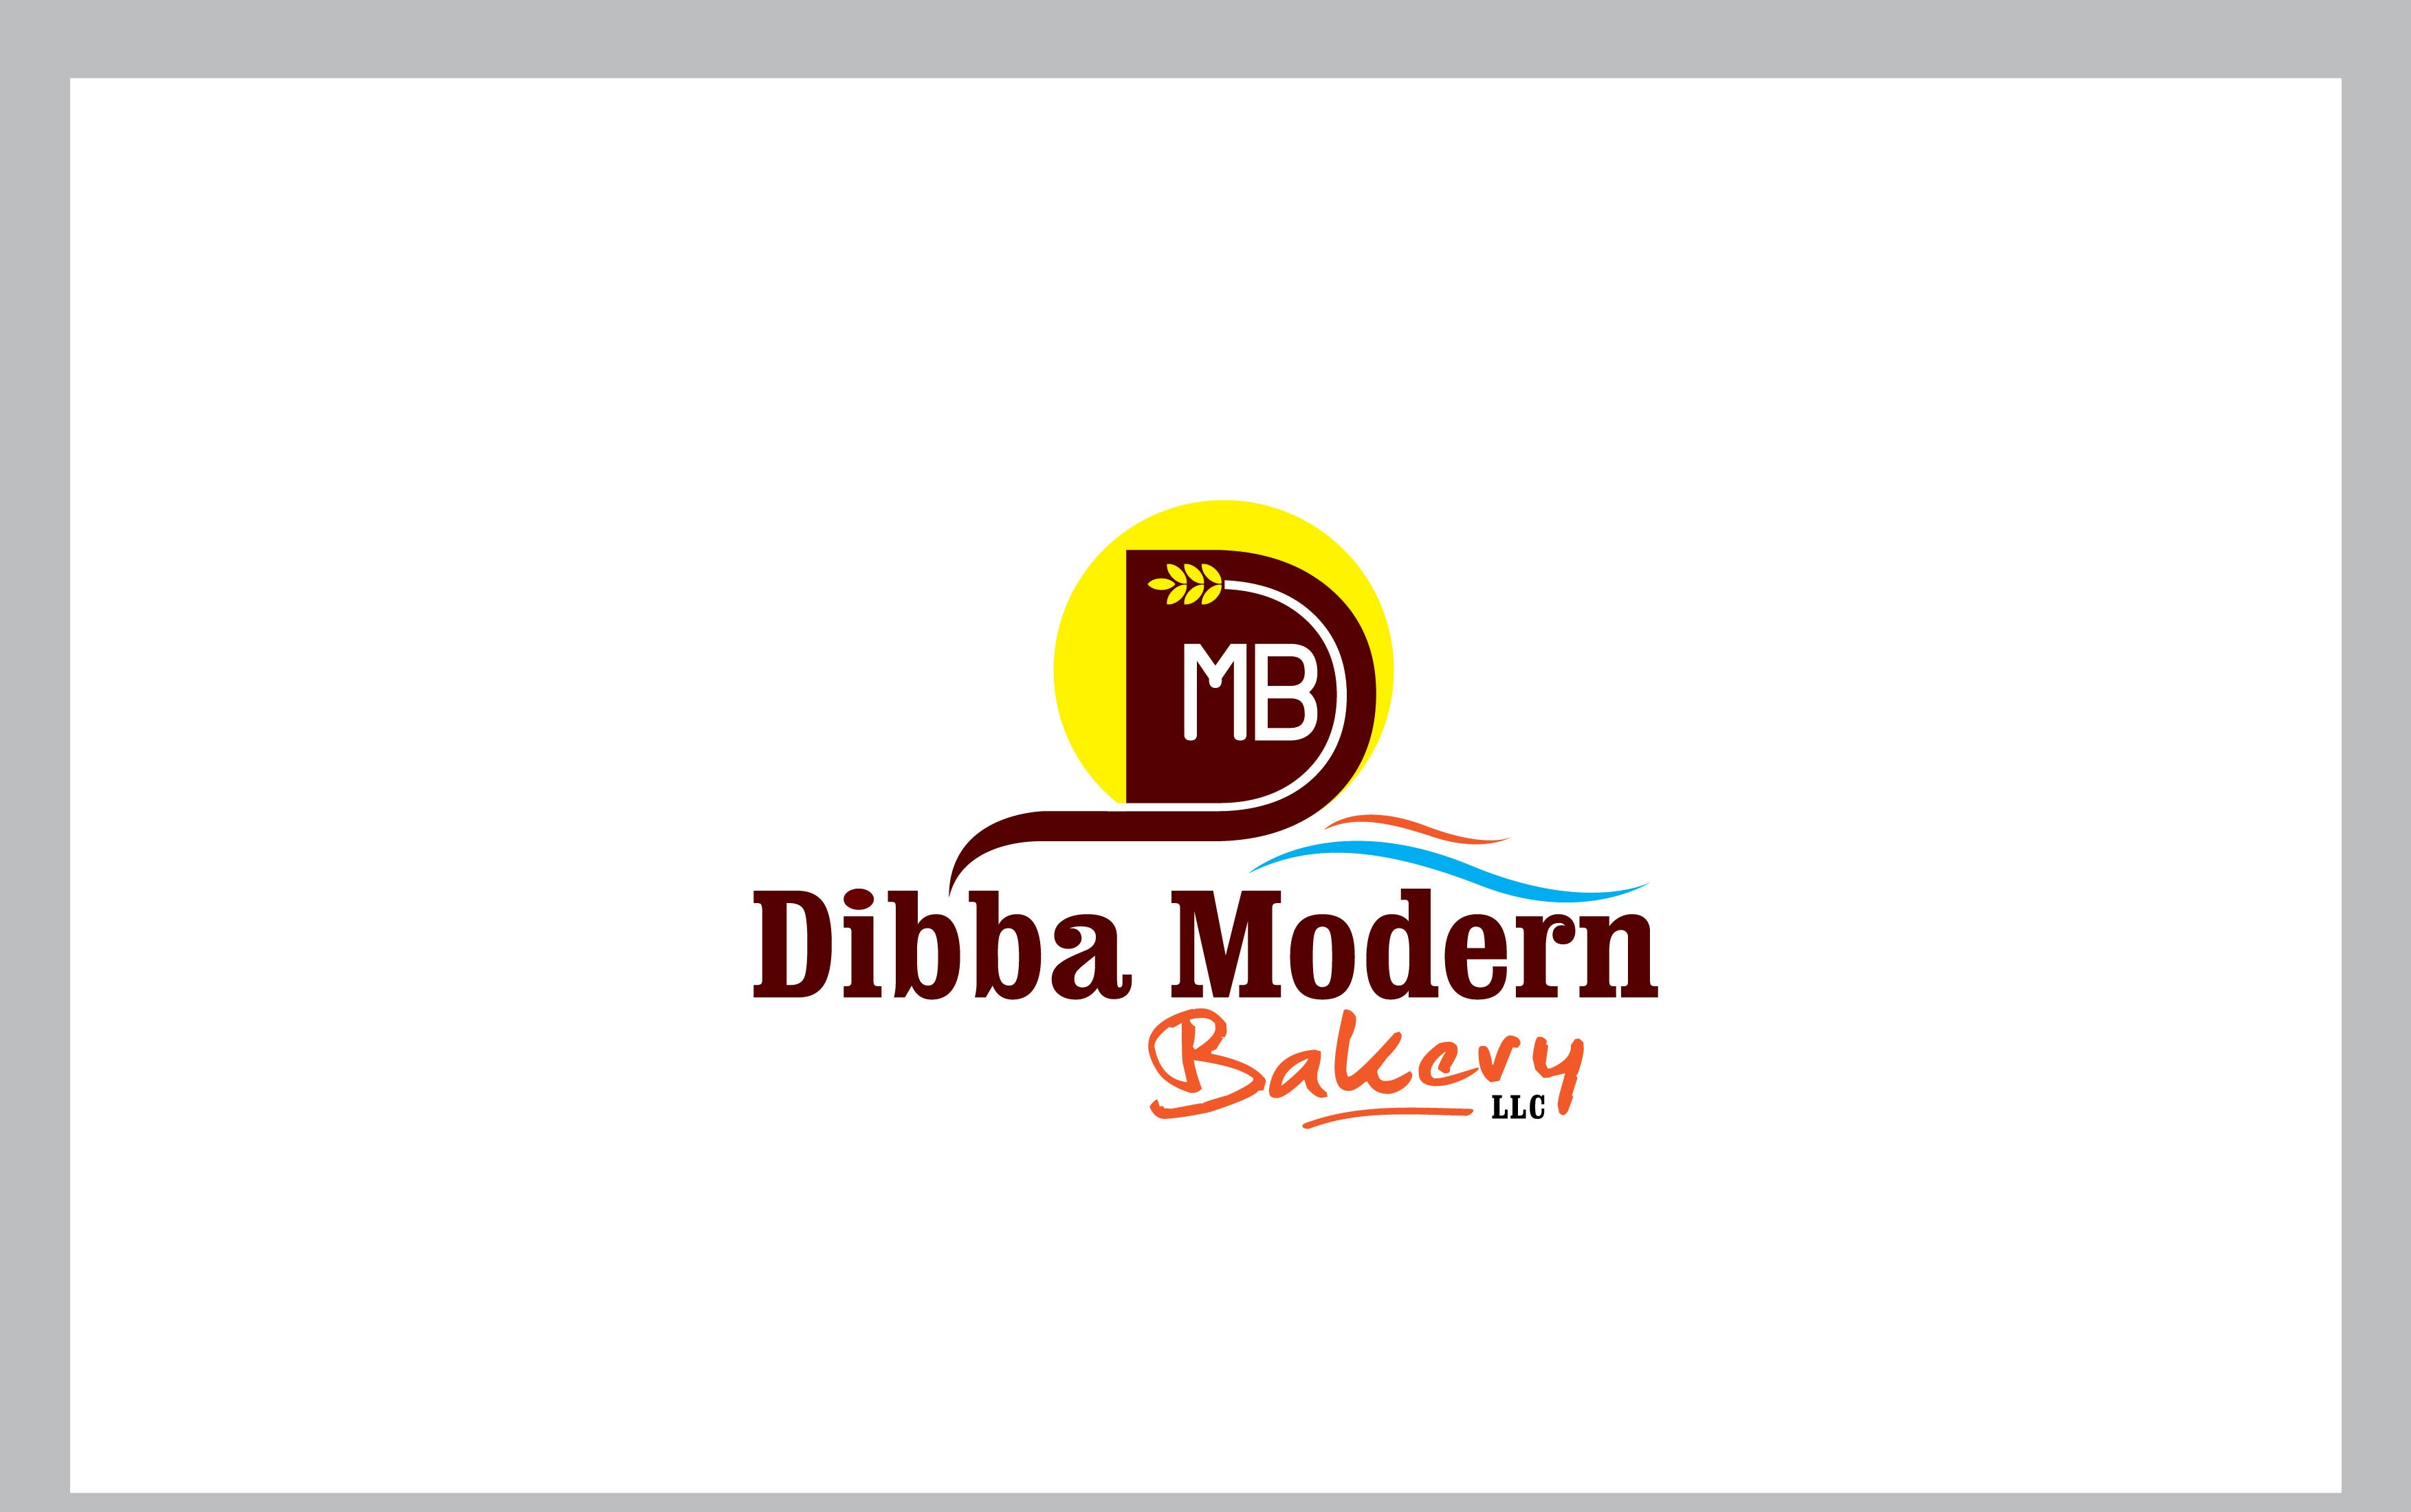 Dibba Modern Bakery LLC Logo